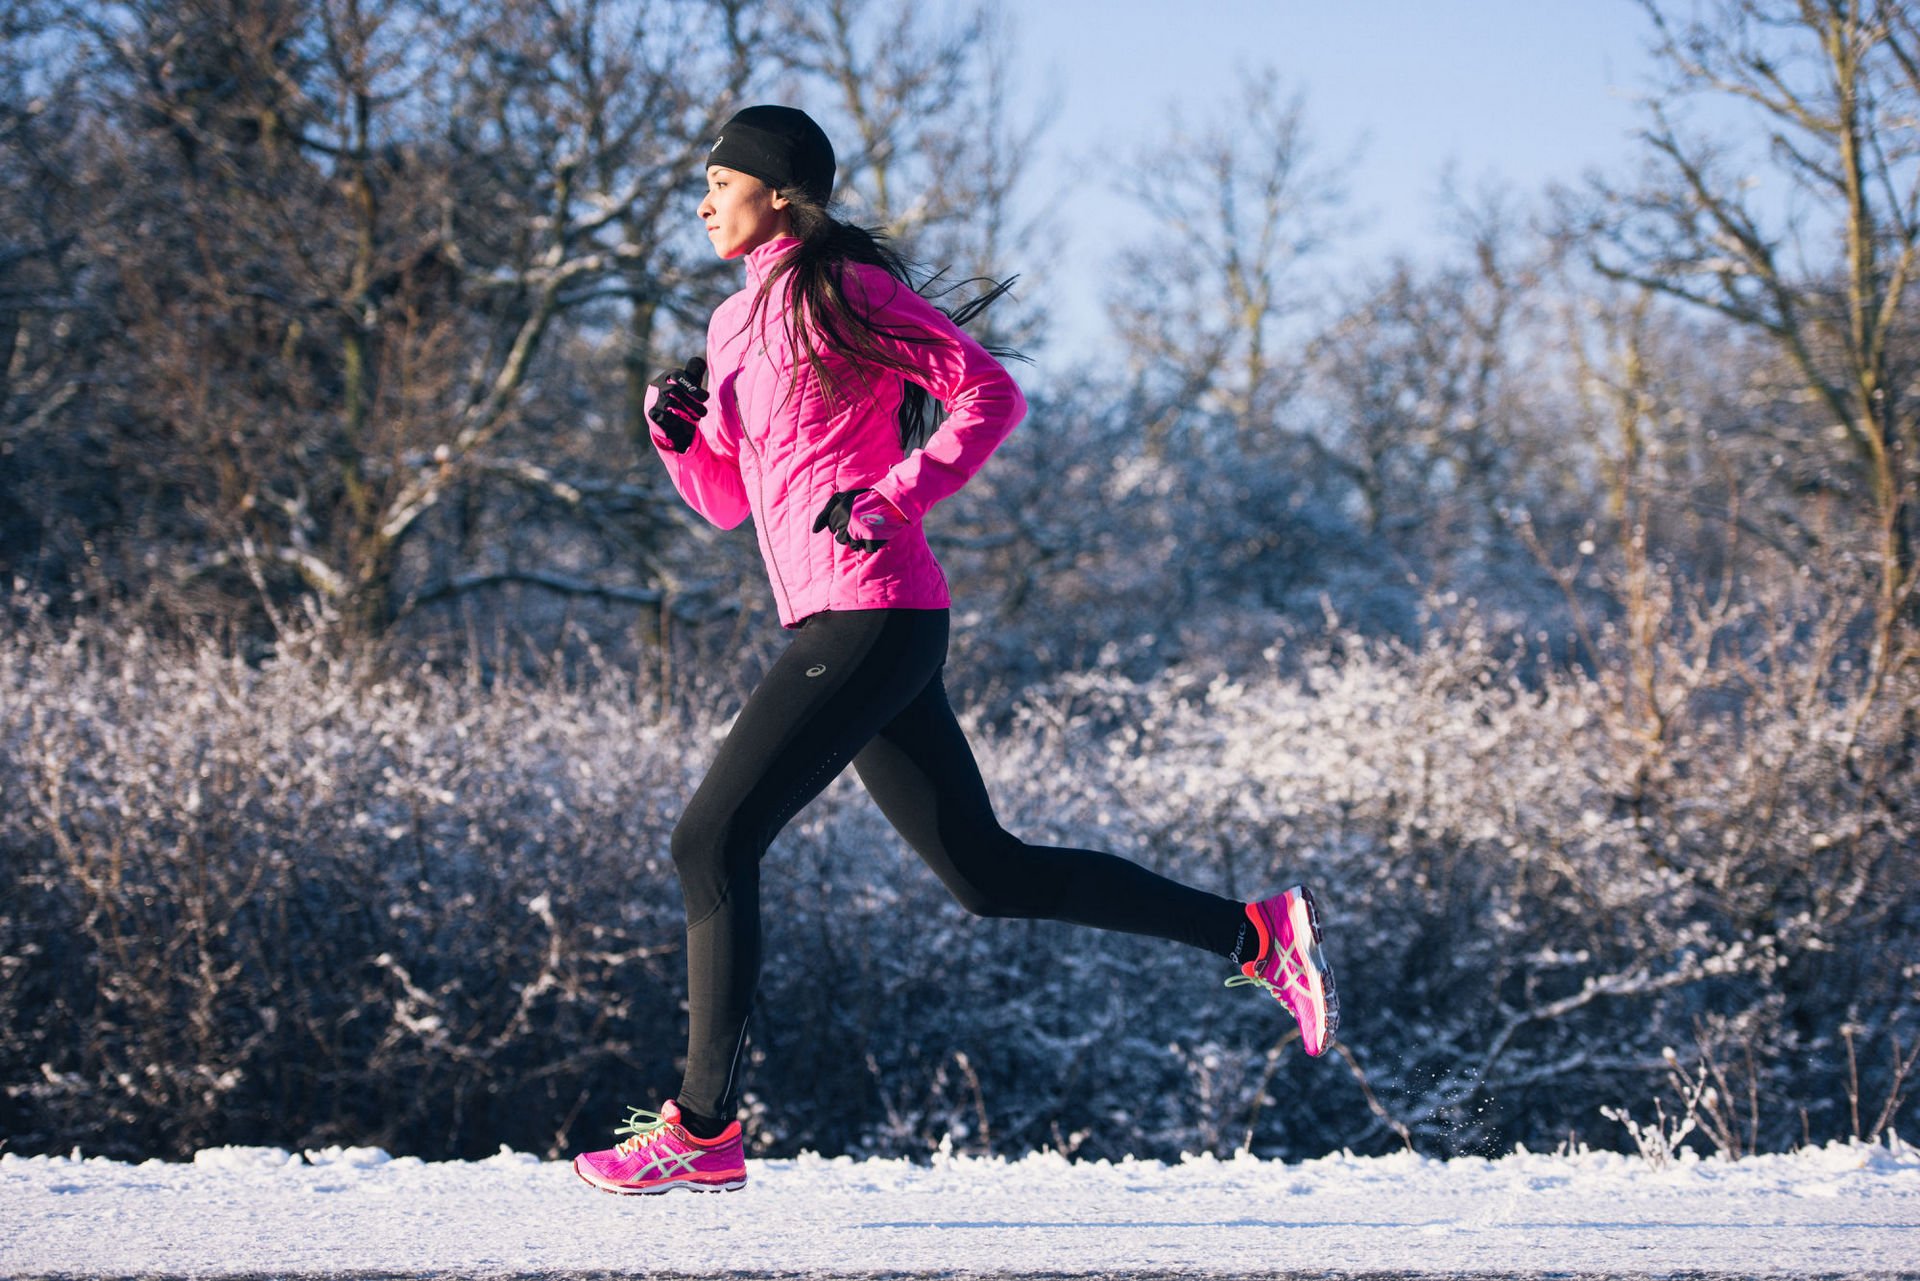 Спортсмены зима. ASICS зимний бег. Зимняя одежда для бега женская. Девушка бежит зимой. Одежда для пробежки зимой.